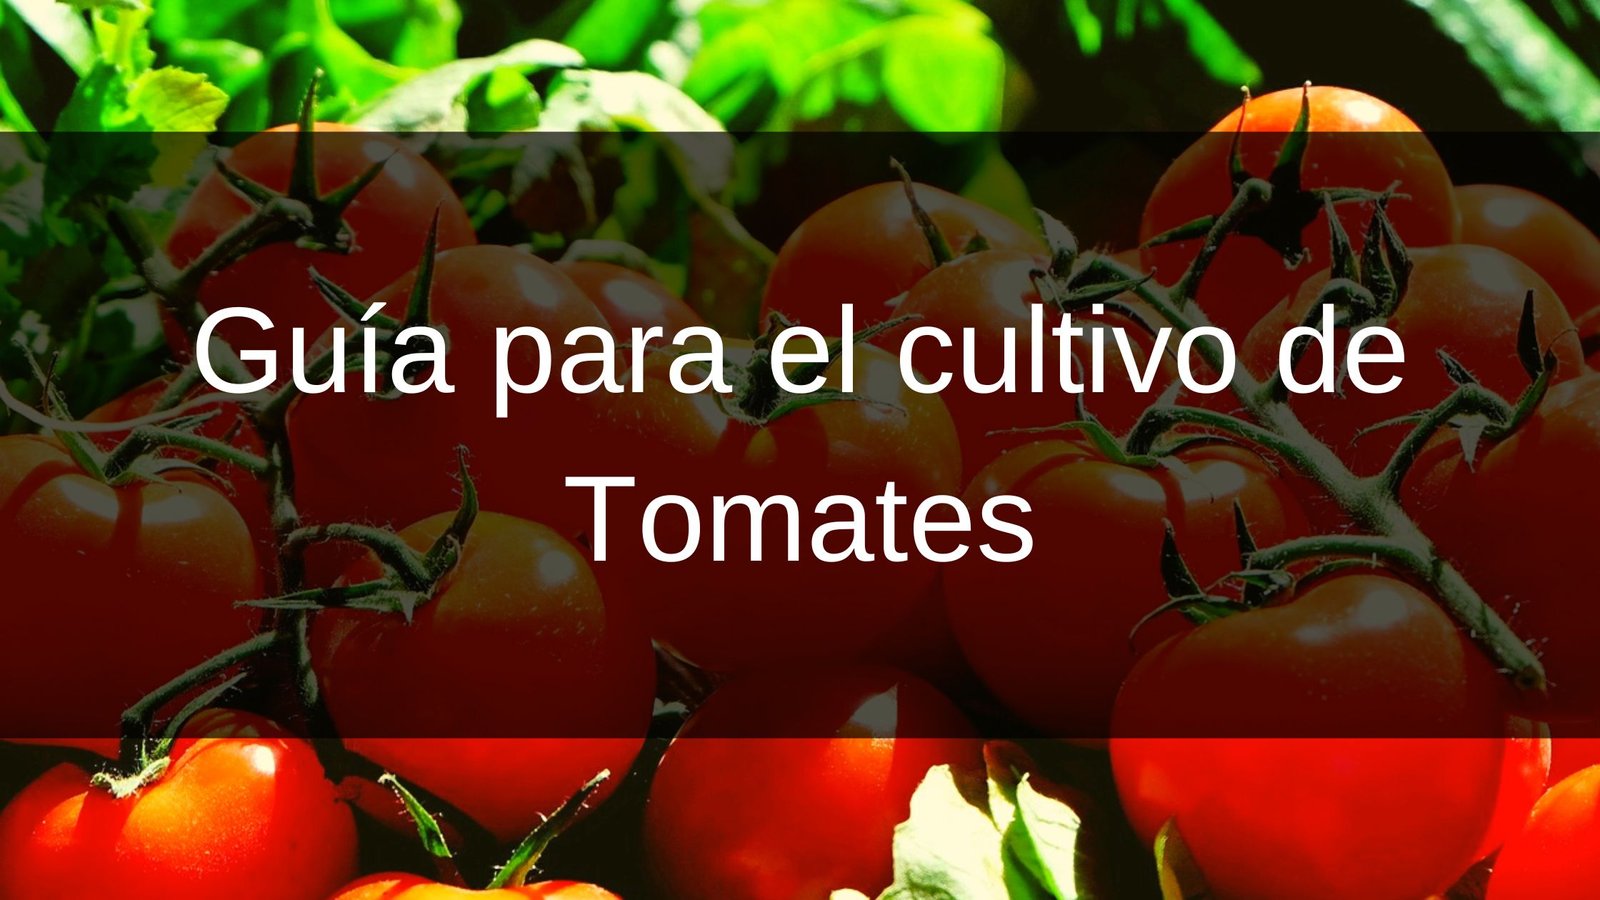 Guía para el cultivo de Tomates (Banner para blog)